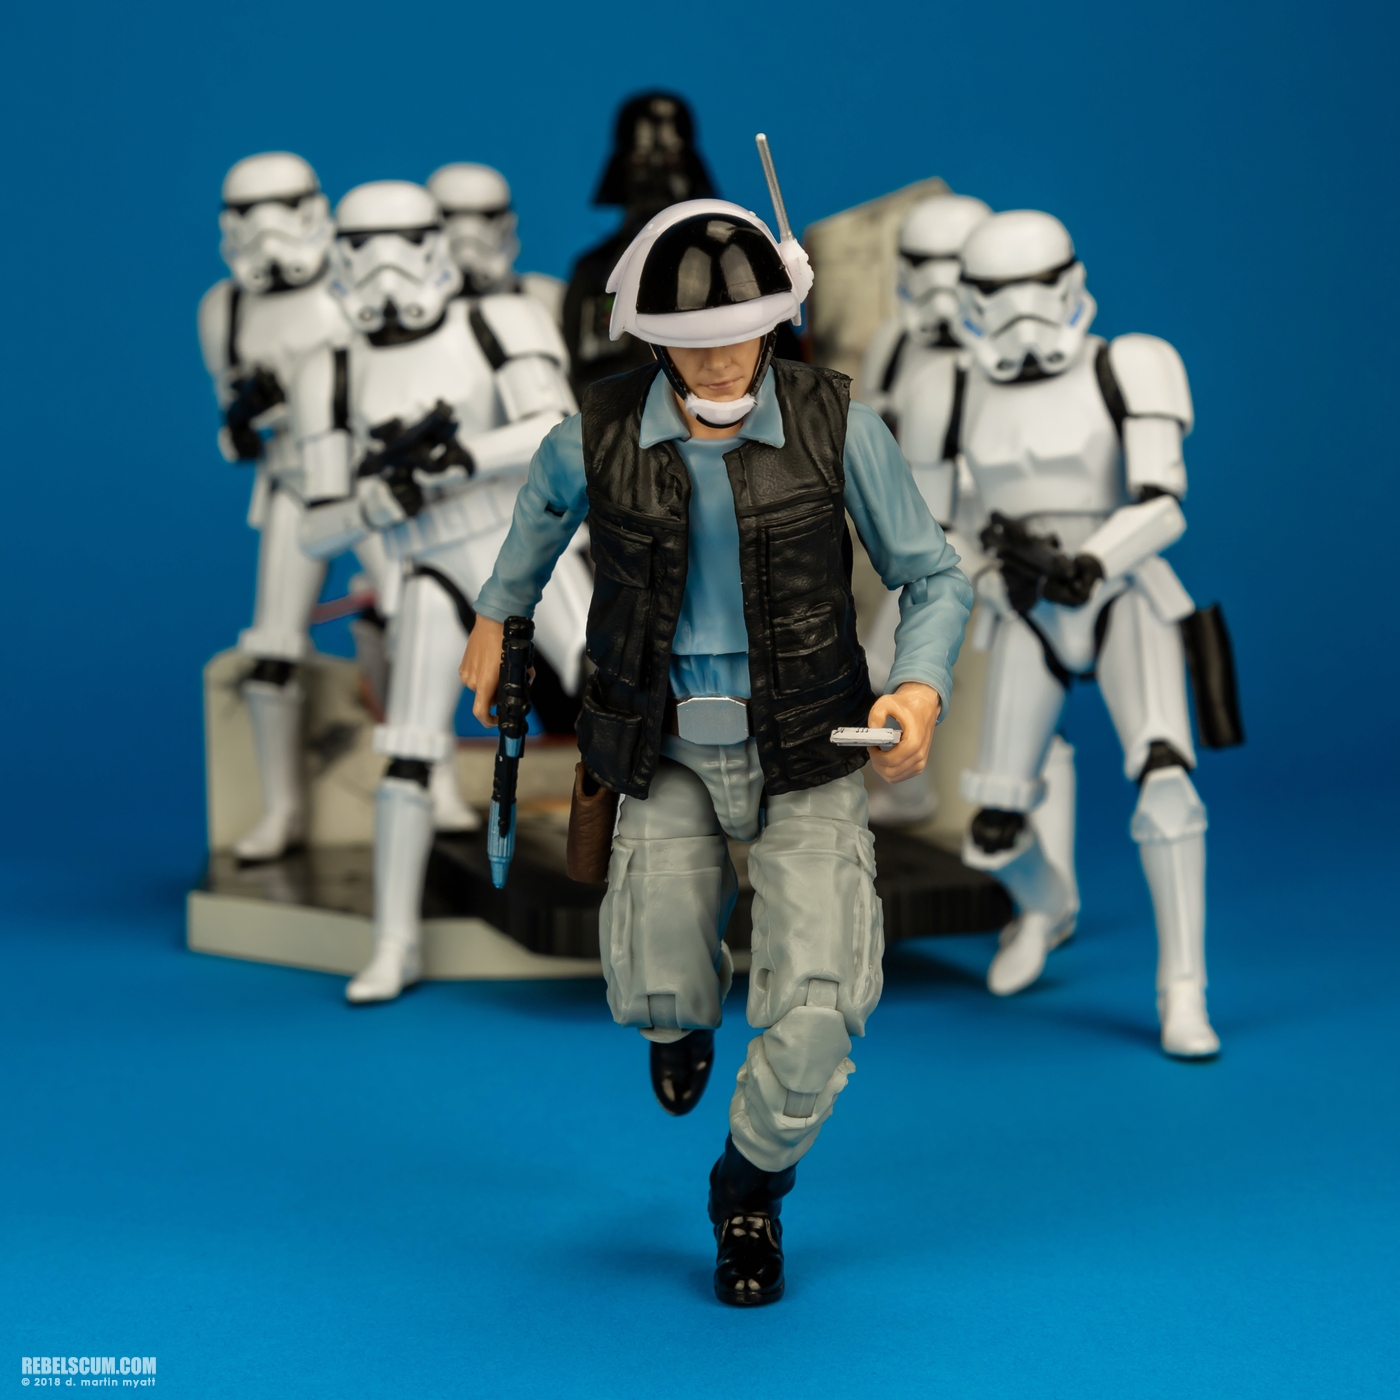 Rebel_Trooper-69-Star-Wars-The-Black-Series-6-inch-Hasbro-012.jpg